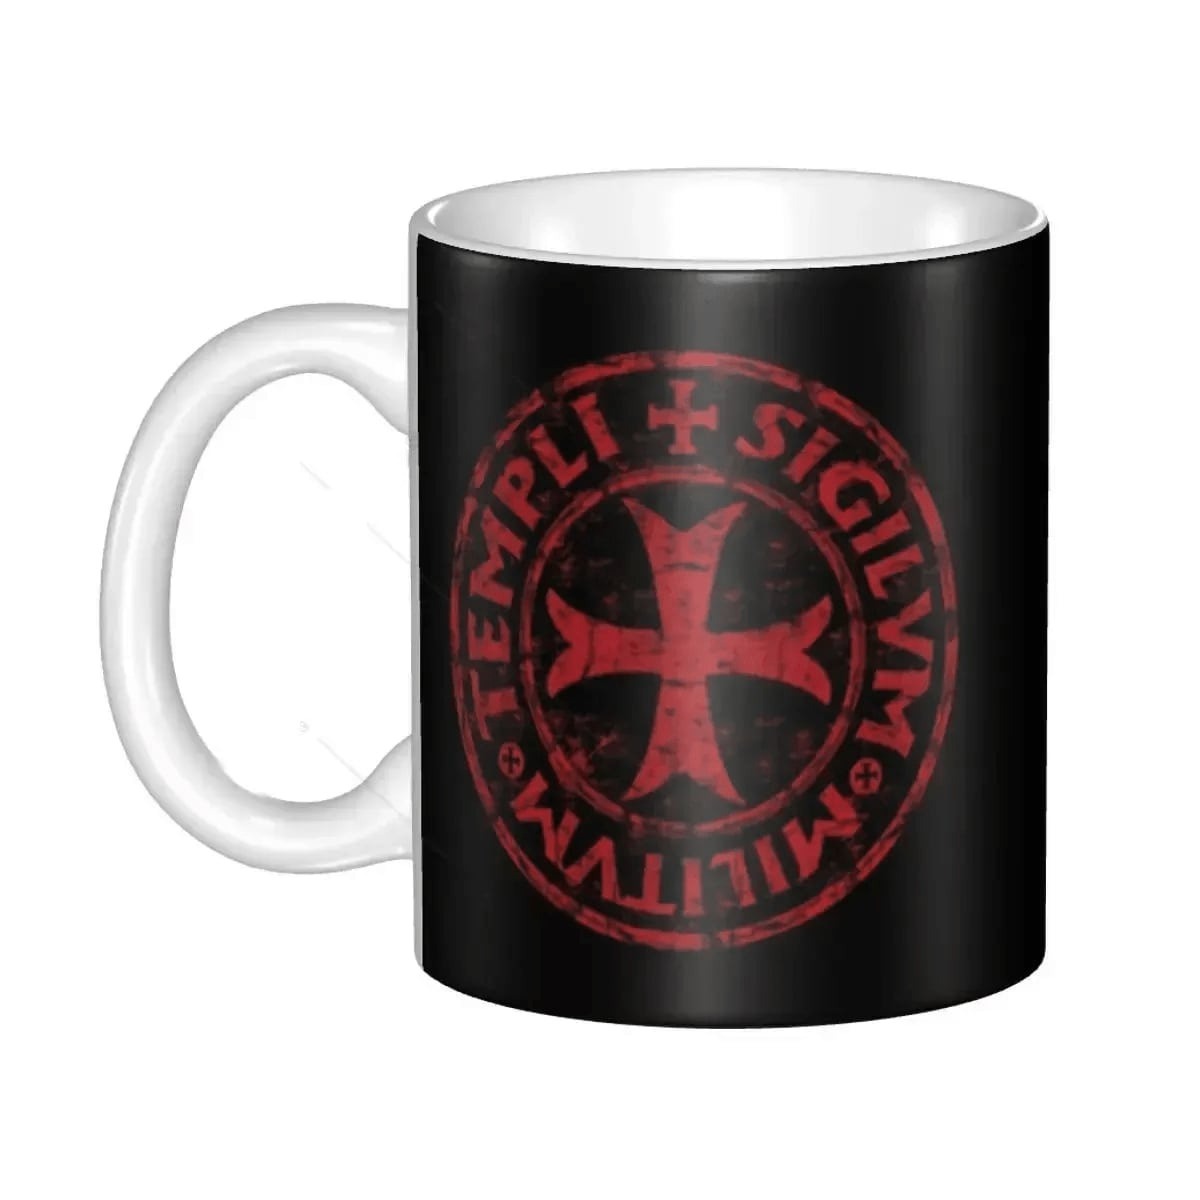 Knights Templar Commandery Mug - Porcelain Red Cross Design - Bricks Masons